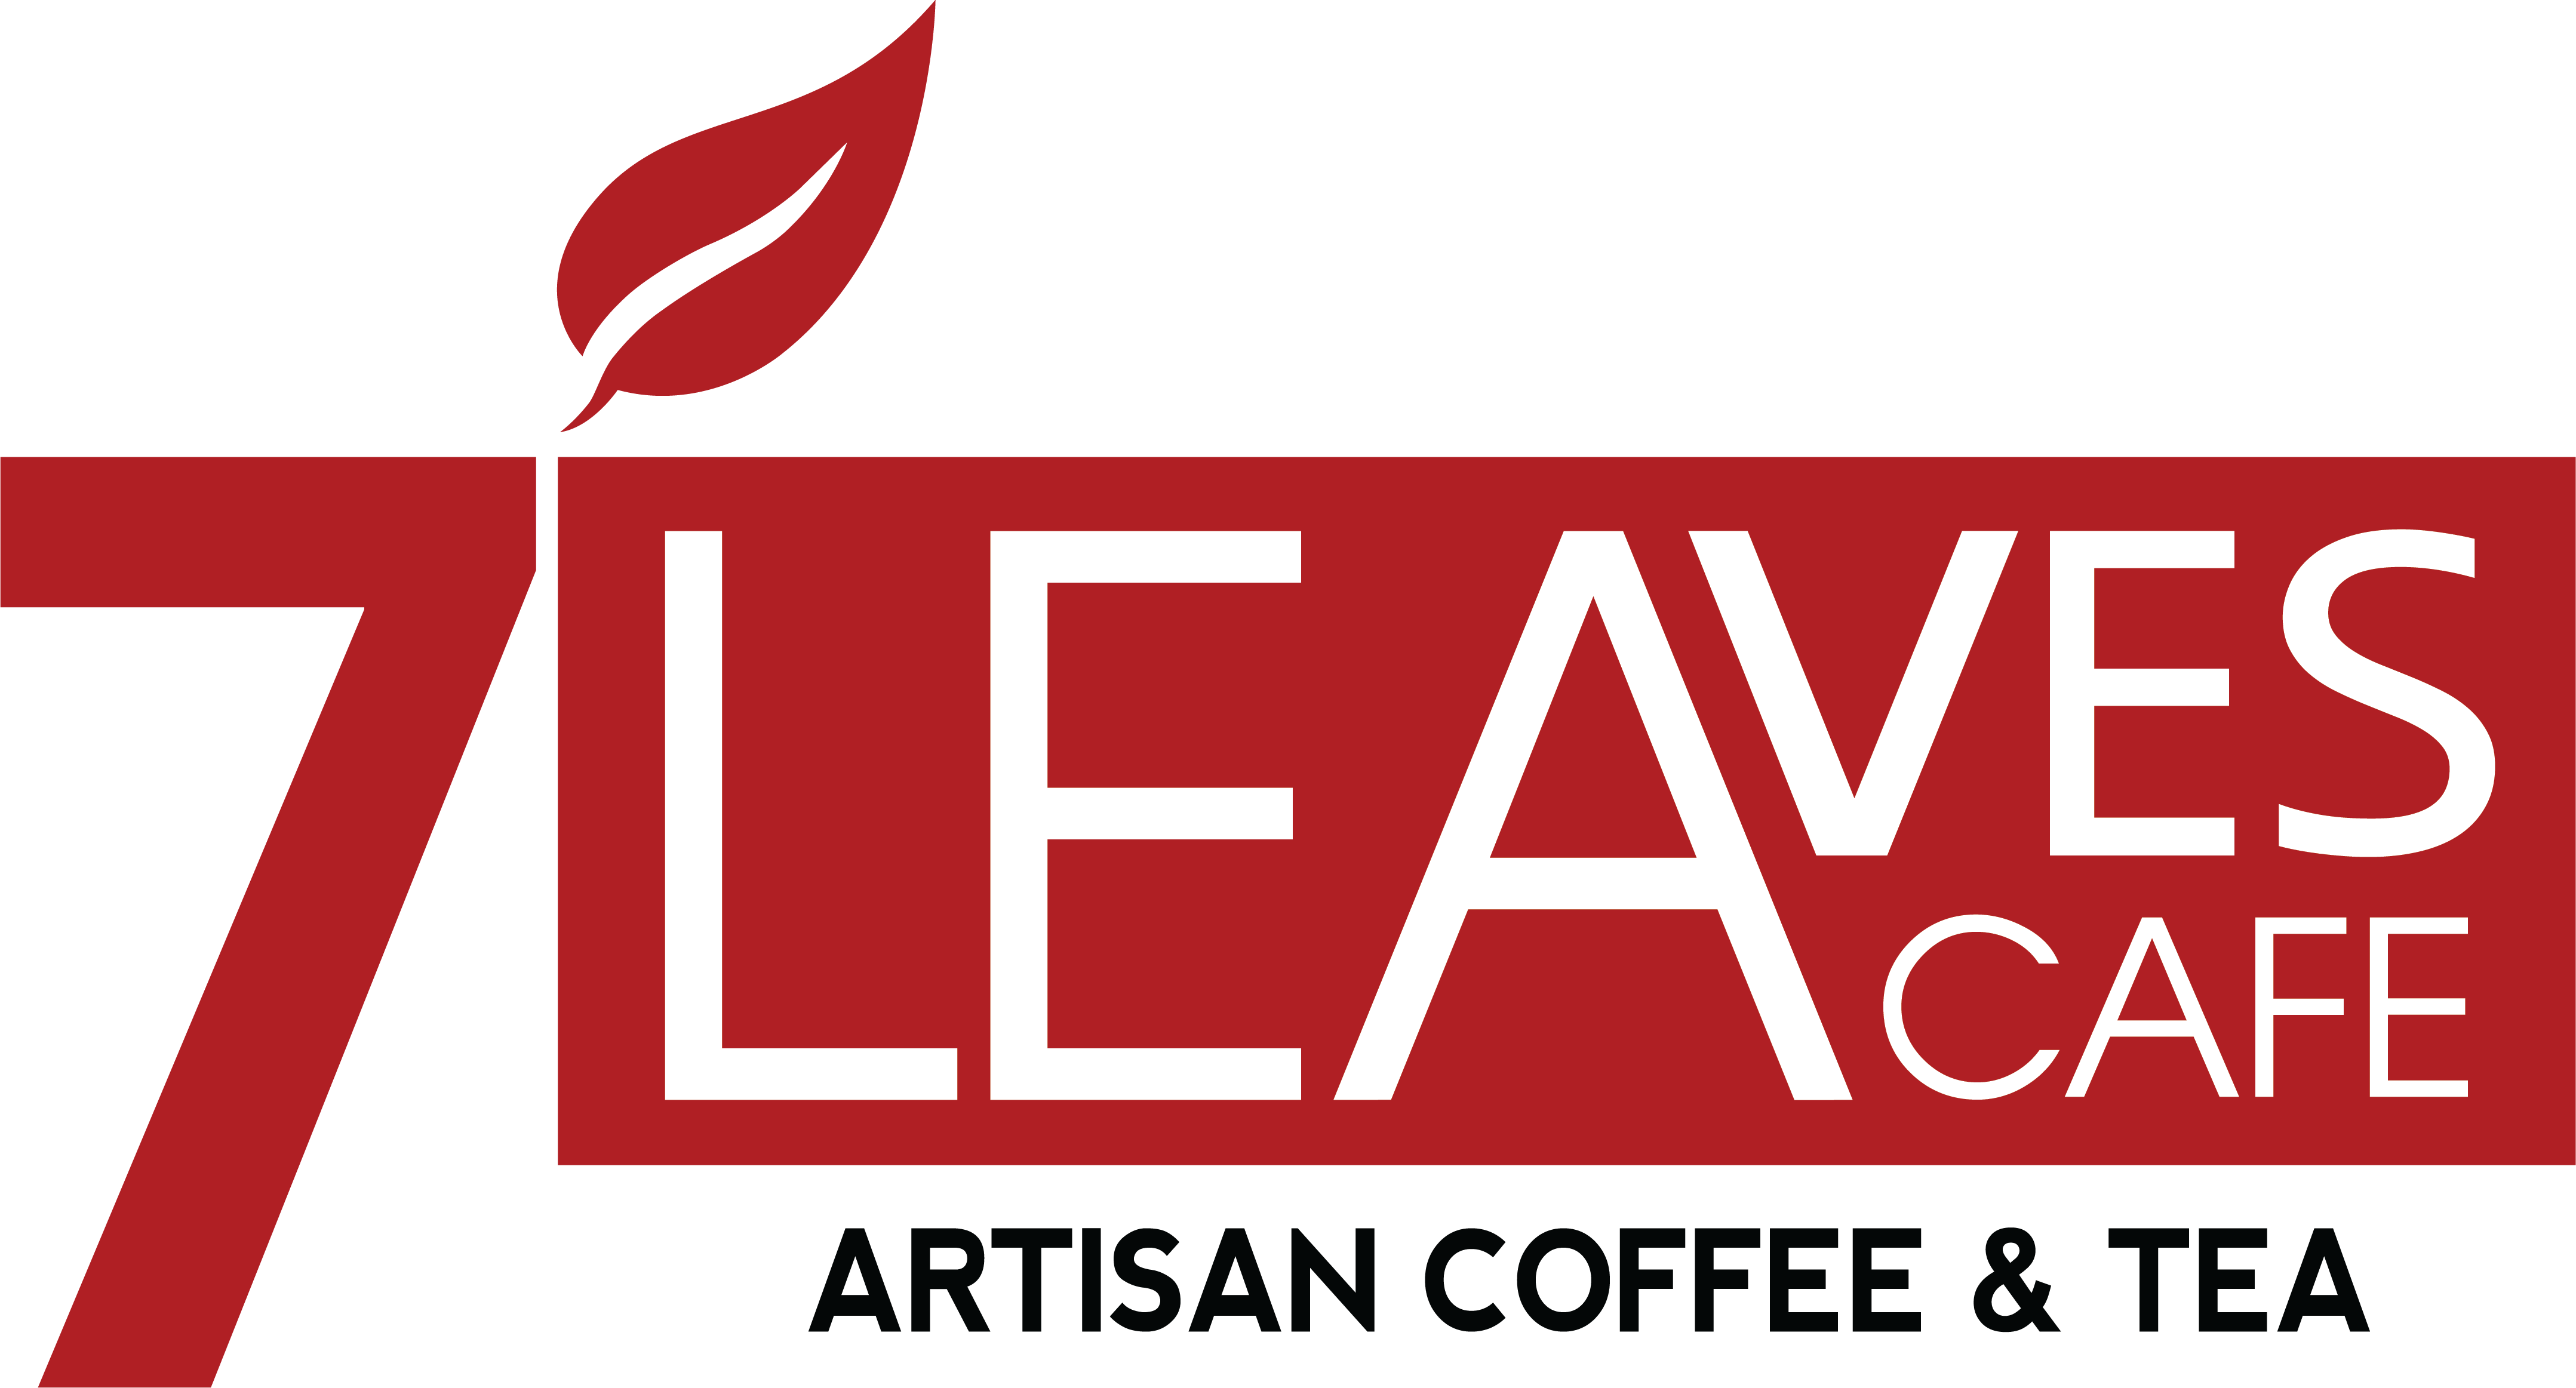 7 Leaves Café